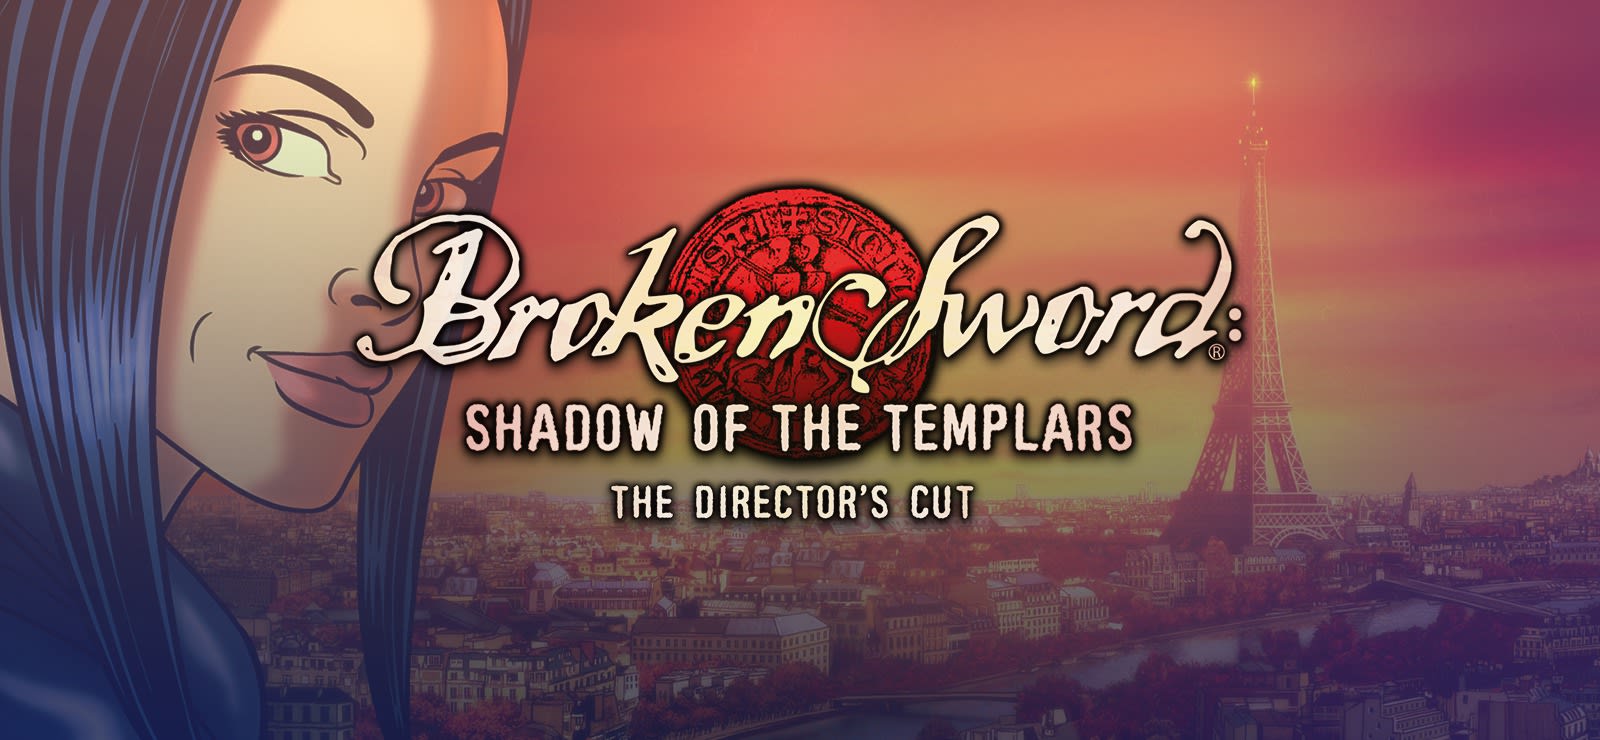 broken sword directors cut snes rom